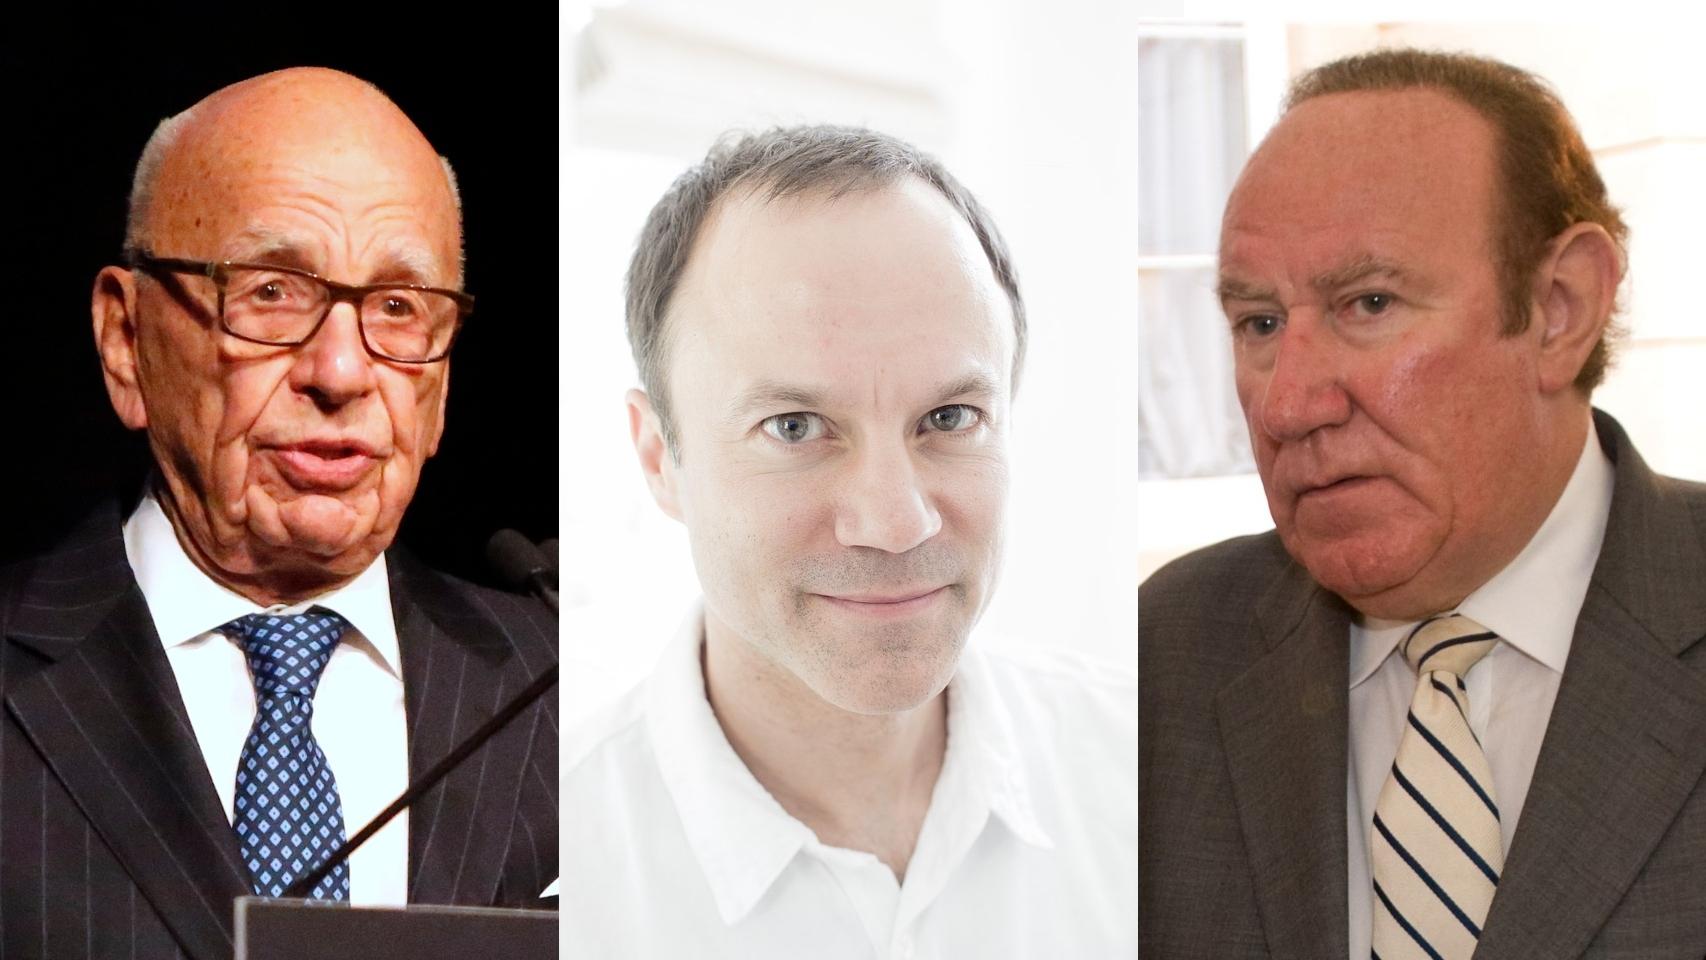 Por orden: Rupert Murdoch; el nuevo director de News UK TV, David Rhodes; y Andrew Neil, que se pasa a GB News.